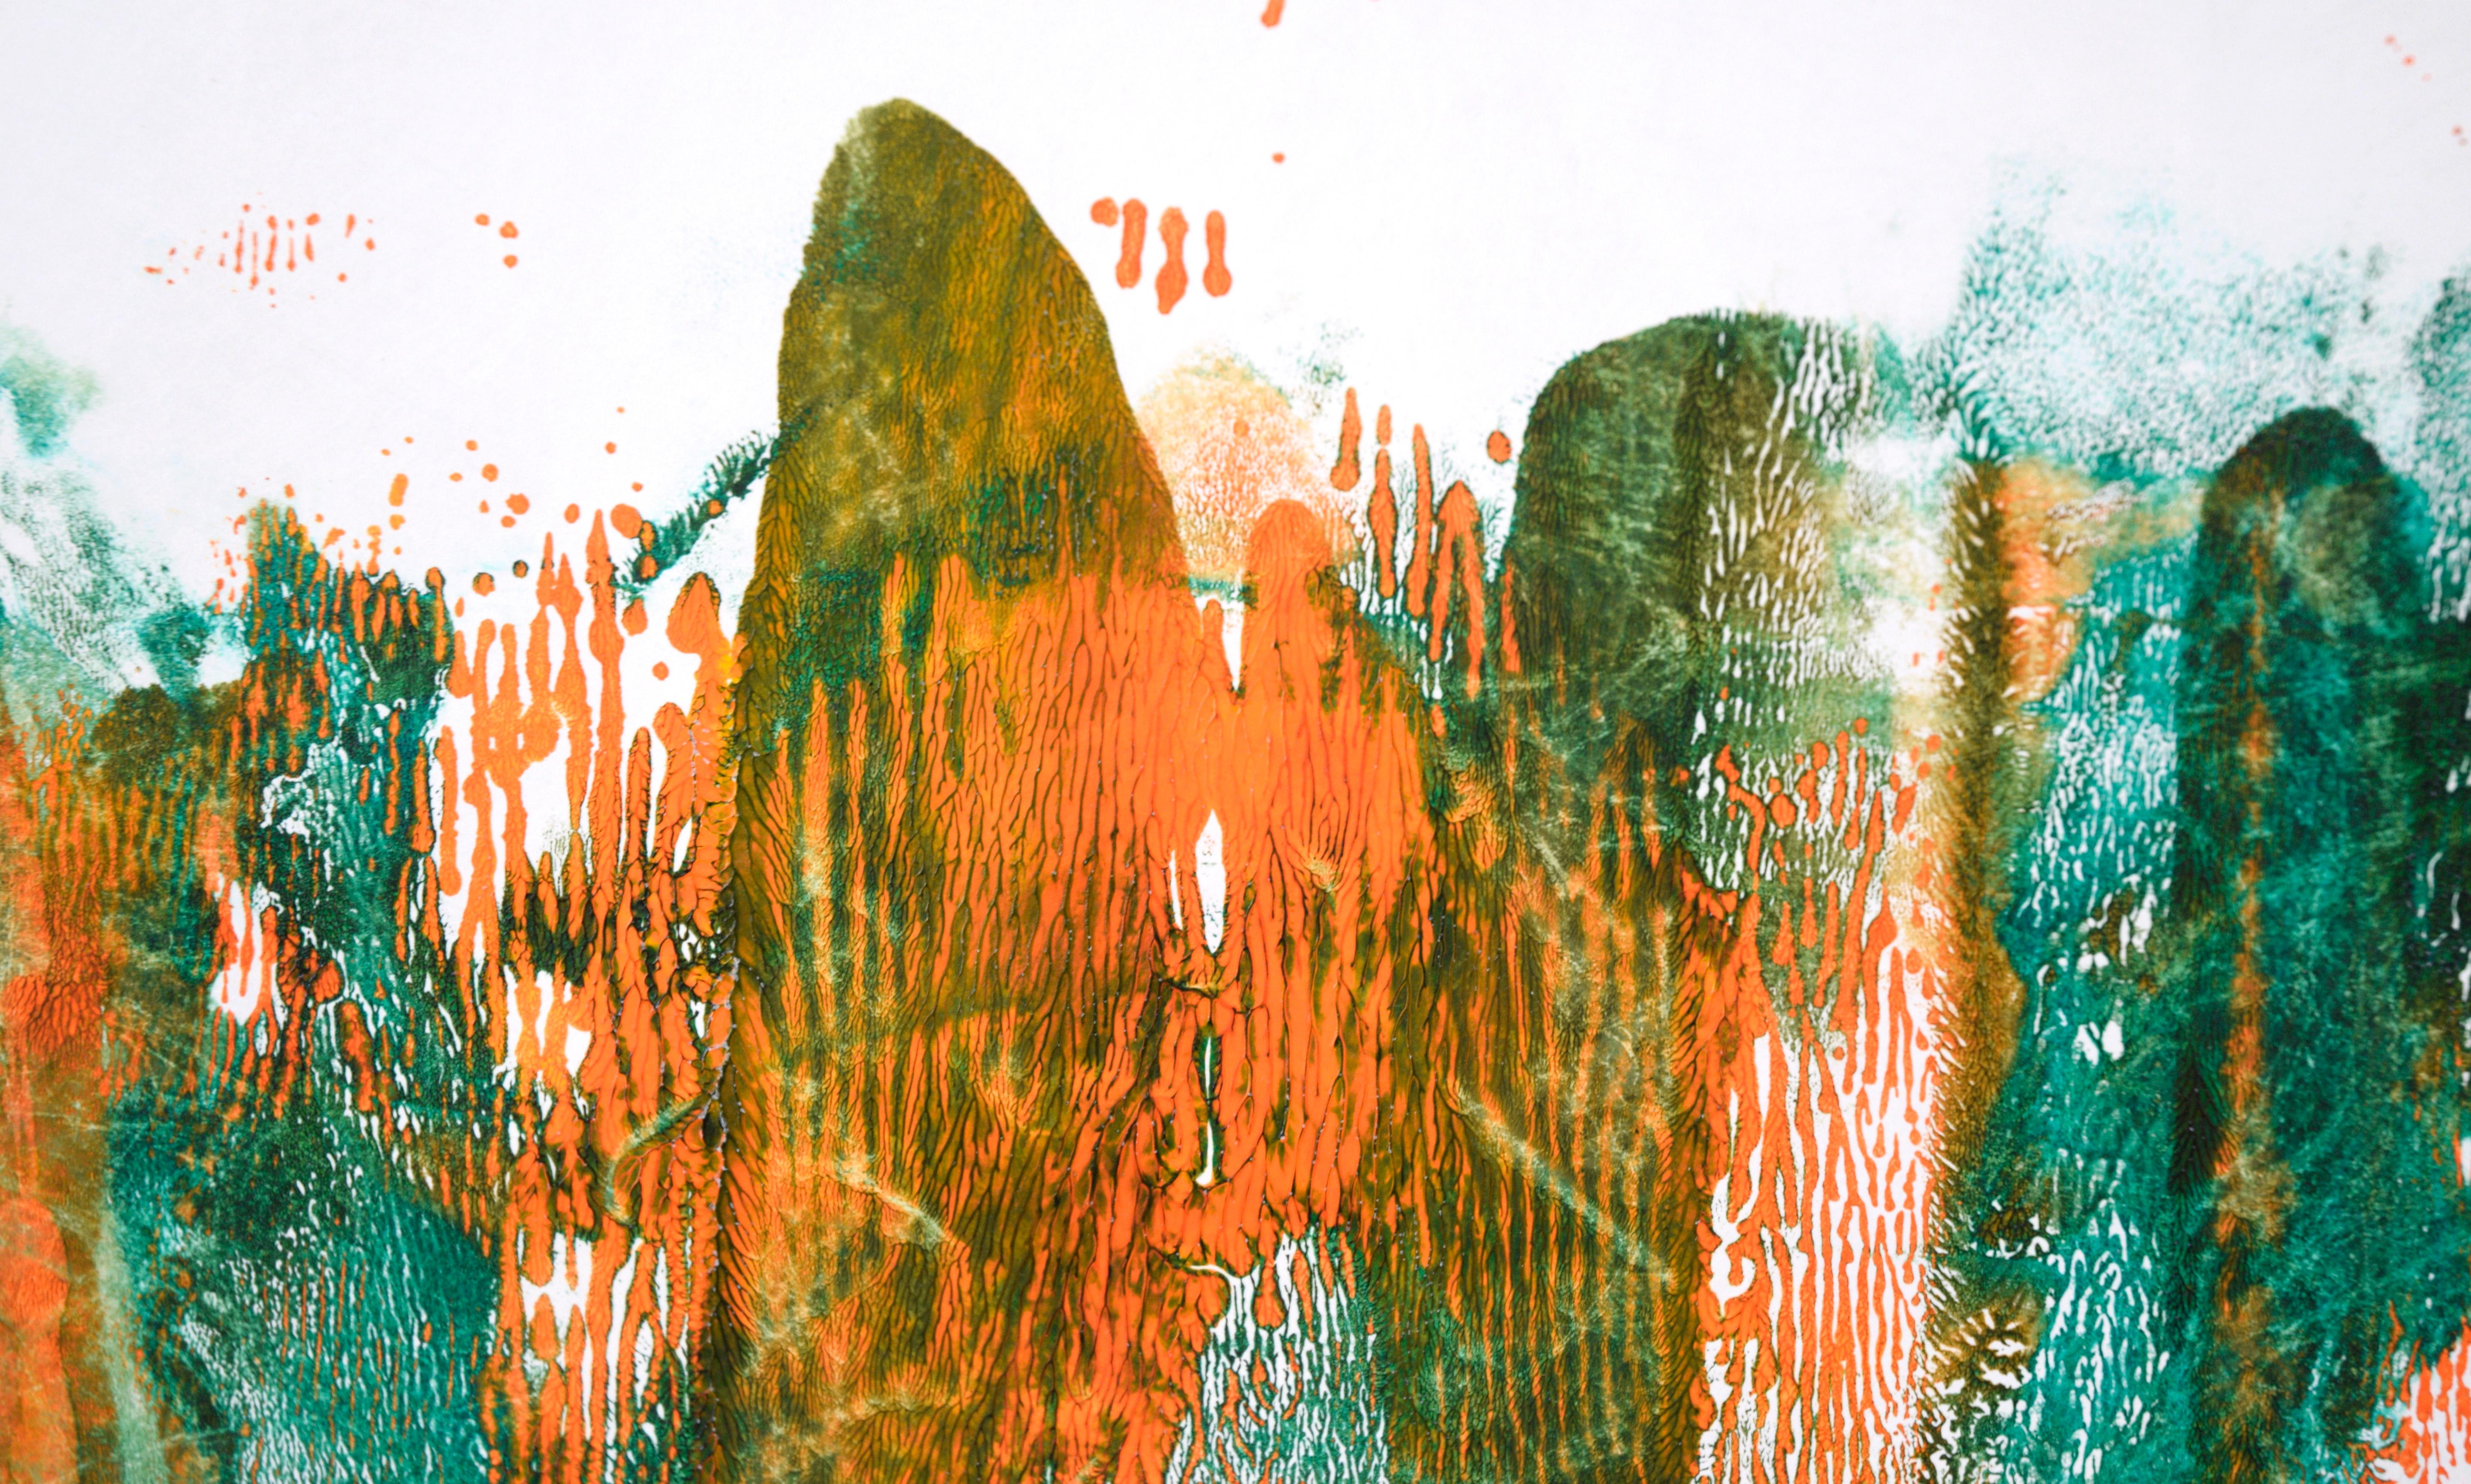 Grüne und orangefarbene abstrakte Komposition aus Acryl auf Papier (Abstrakter Expressionismus), Painting, von Ricardo de Silva